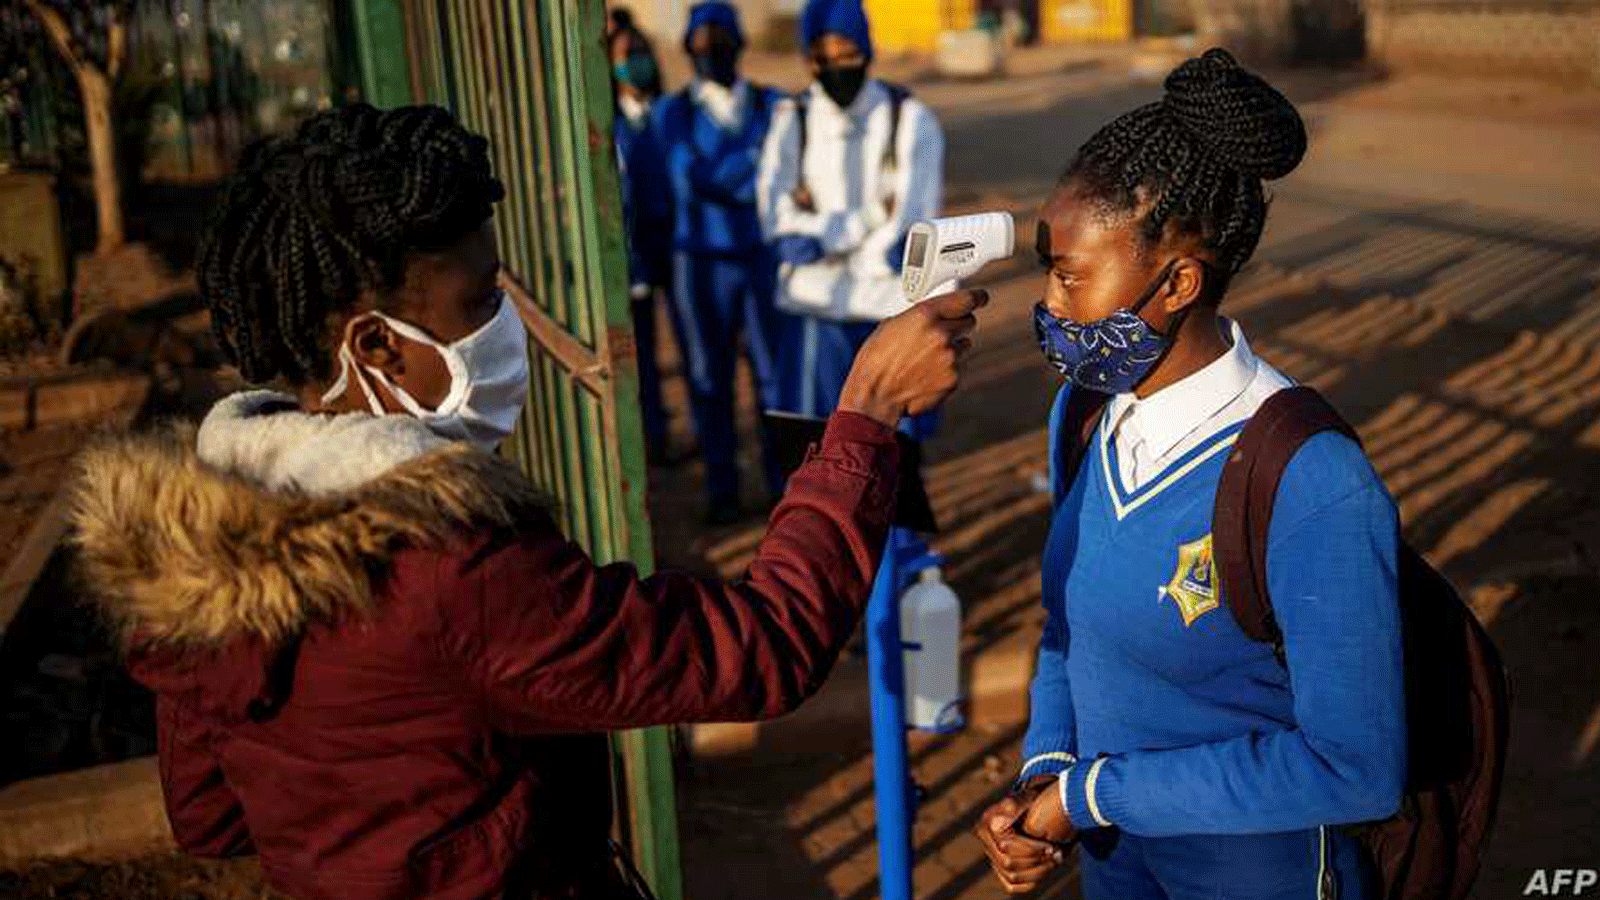 طالبة في مدرسة ويني مانديلا الثانوية تم قياس درجة حرارتها عند دخولها مبنى المدرسة قبل استئناف الدراسة في بلدة تمبيسا، إكورهوليني، جنوب إفريقيا. في 8 حزيران/ يونيو 2020